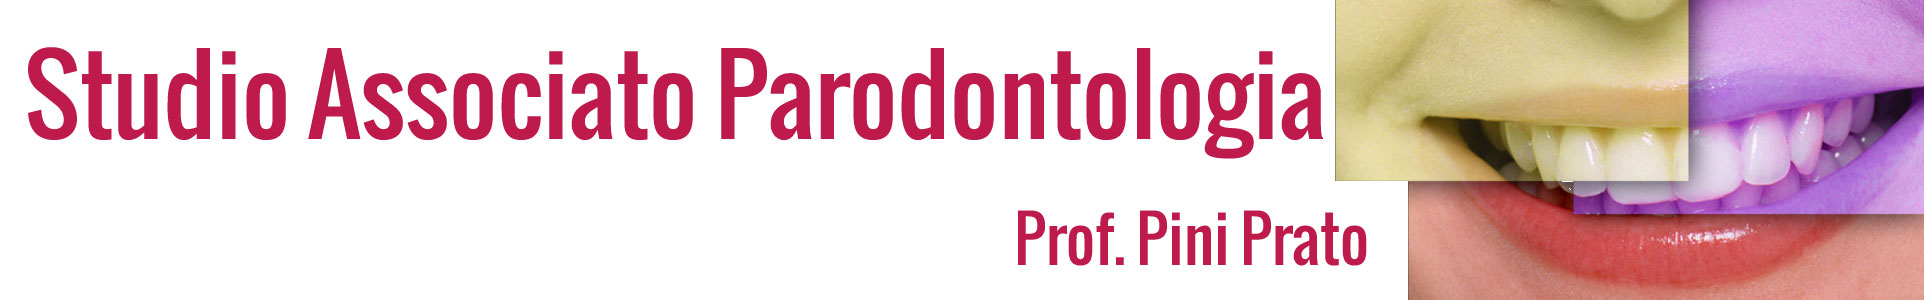 Studio Associato Parodontologia Prof. Pini Prato